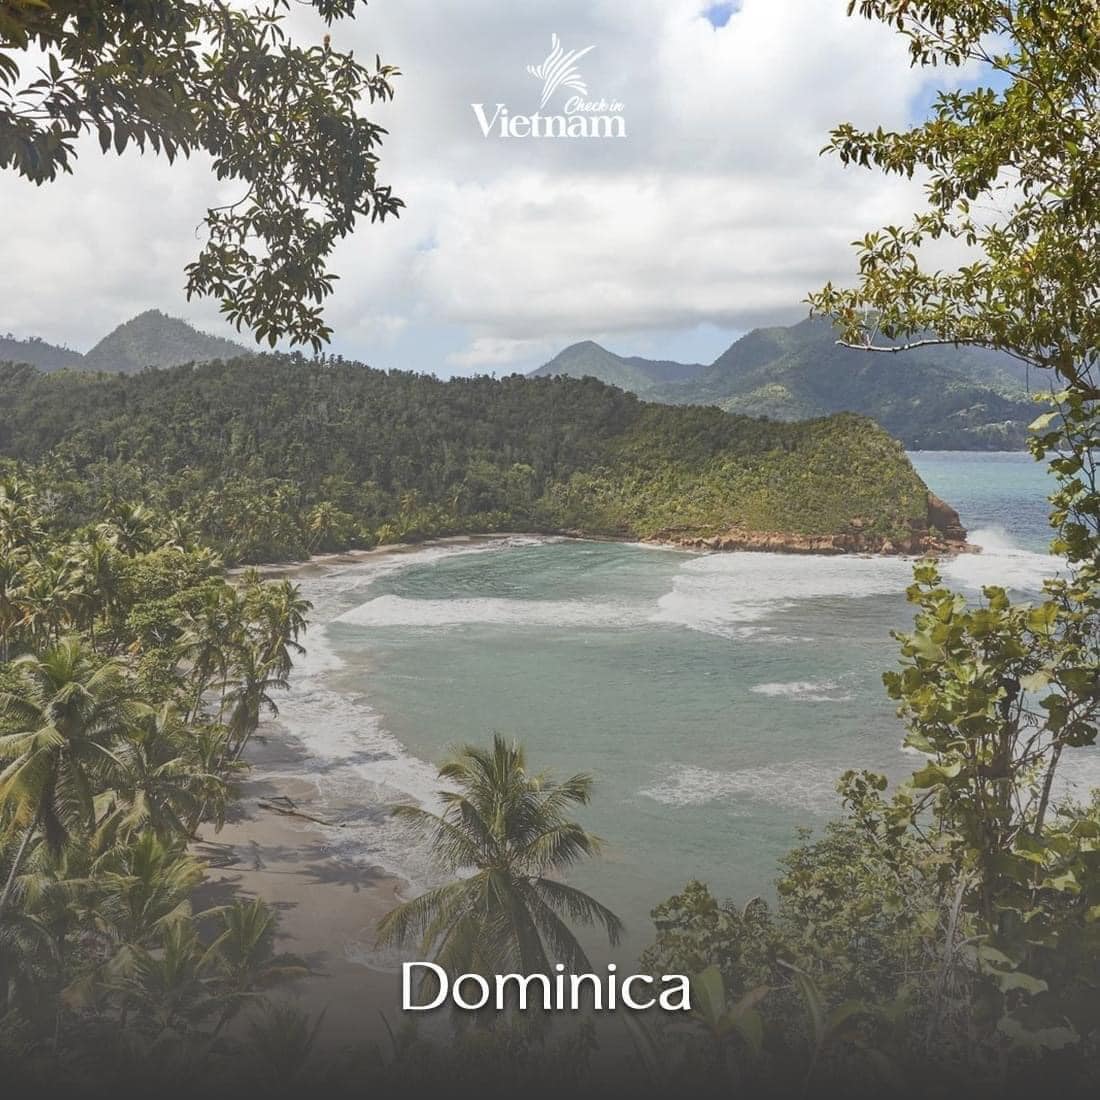 3. Dominica